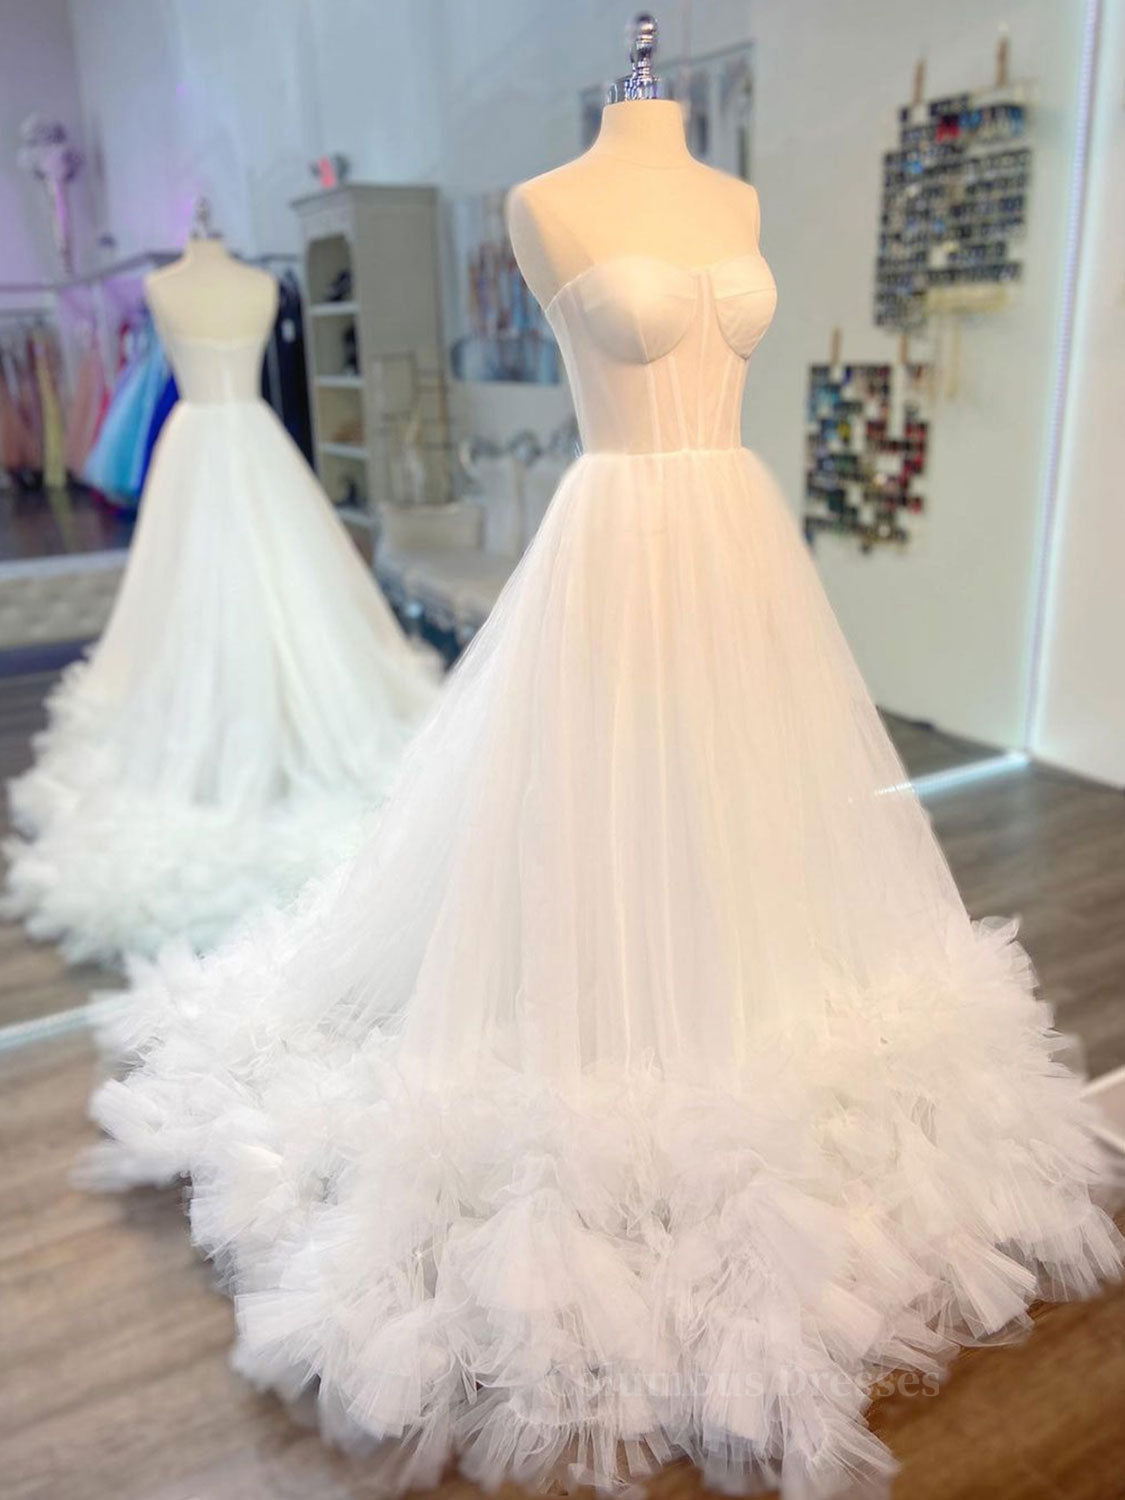 Formal Dresses For Winter, White sweetheart neck tulle long prom dress white formal dress